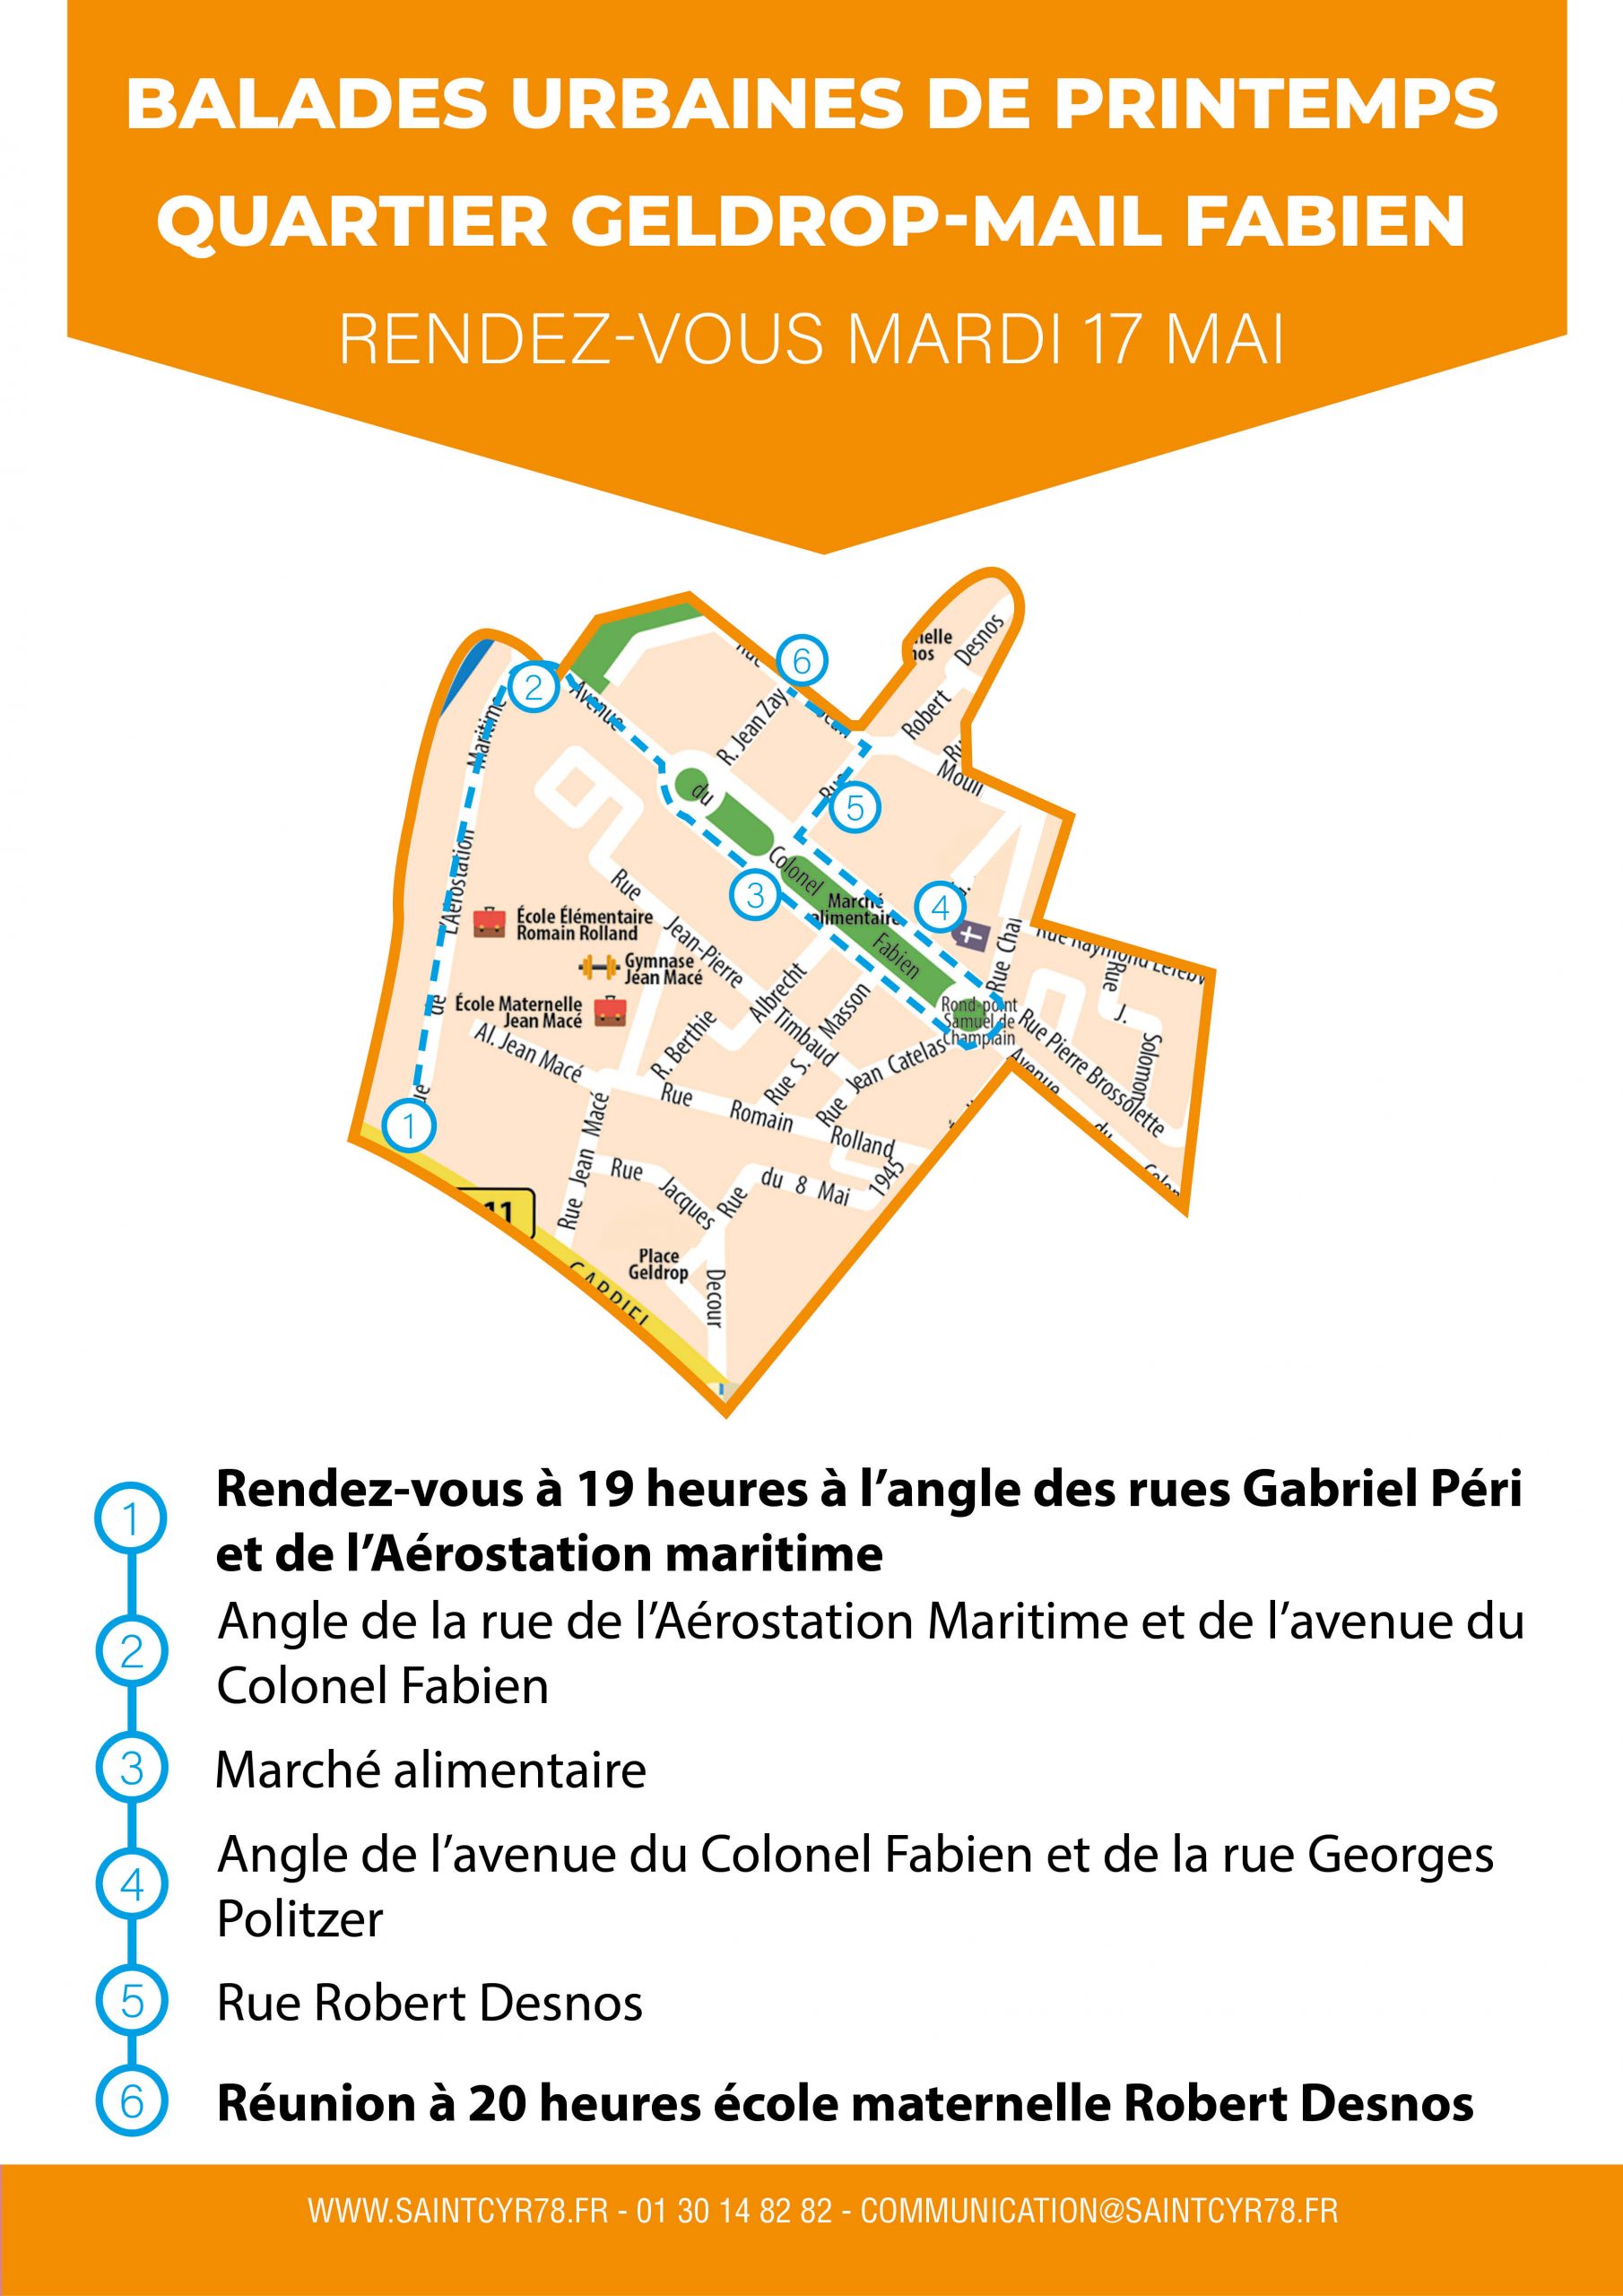 Balades urbaines – Quartier Geldrop-Mail Fabien